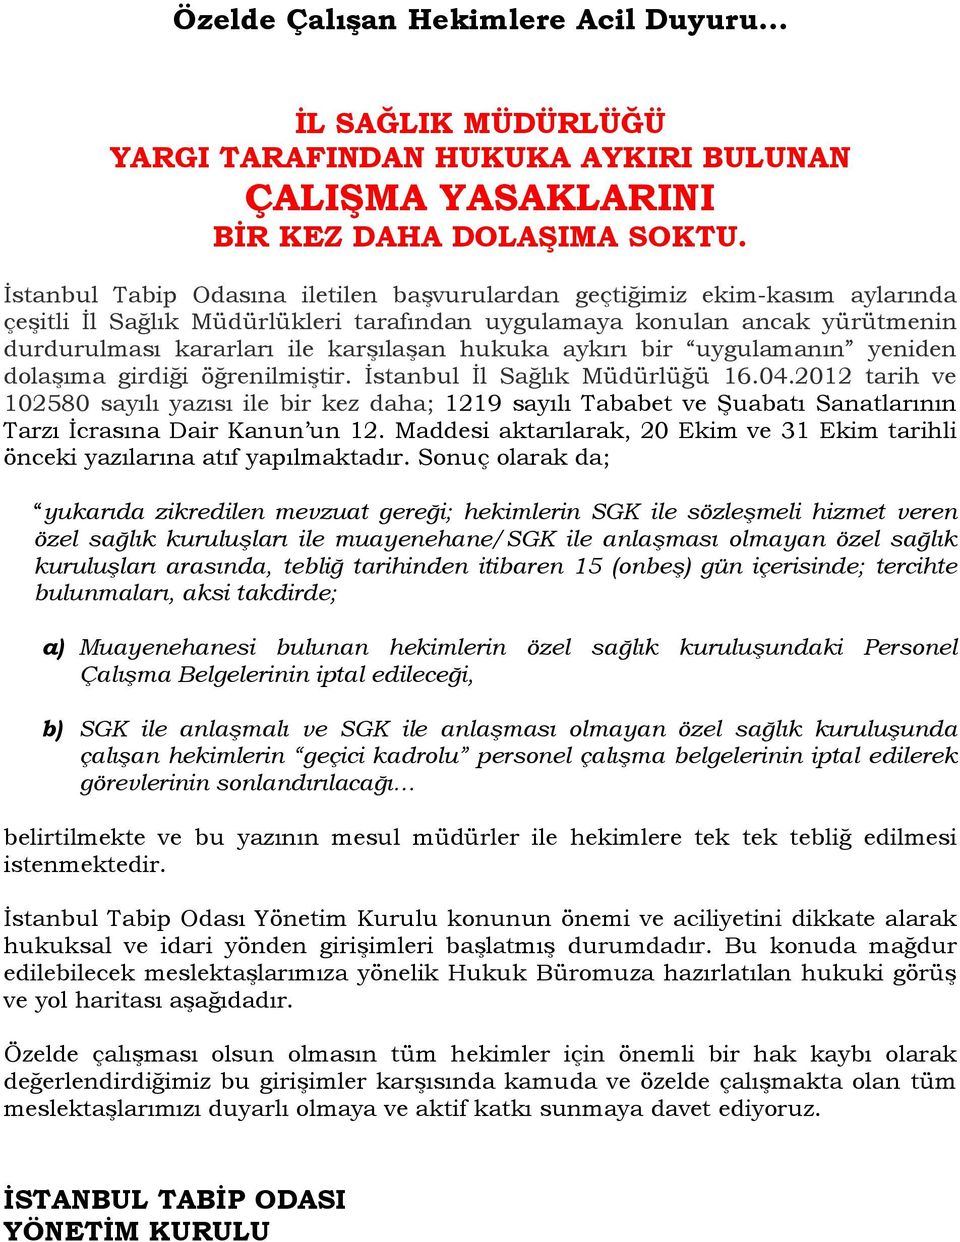 hukuka aykırı bir uygulamanın yeniden dolaşıma girdiği öğrenilmiştir. İstanbul İl Sağlık Müdürlüğü 16.04.